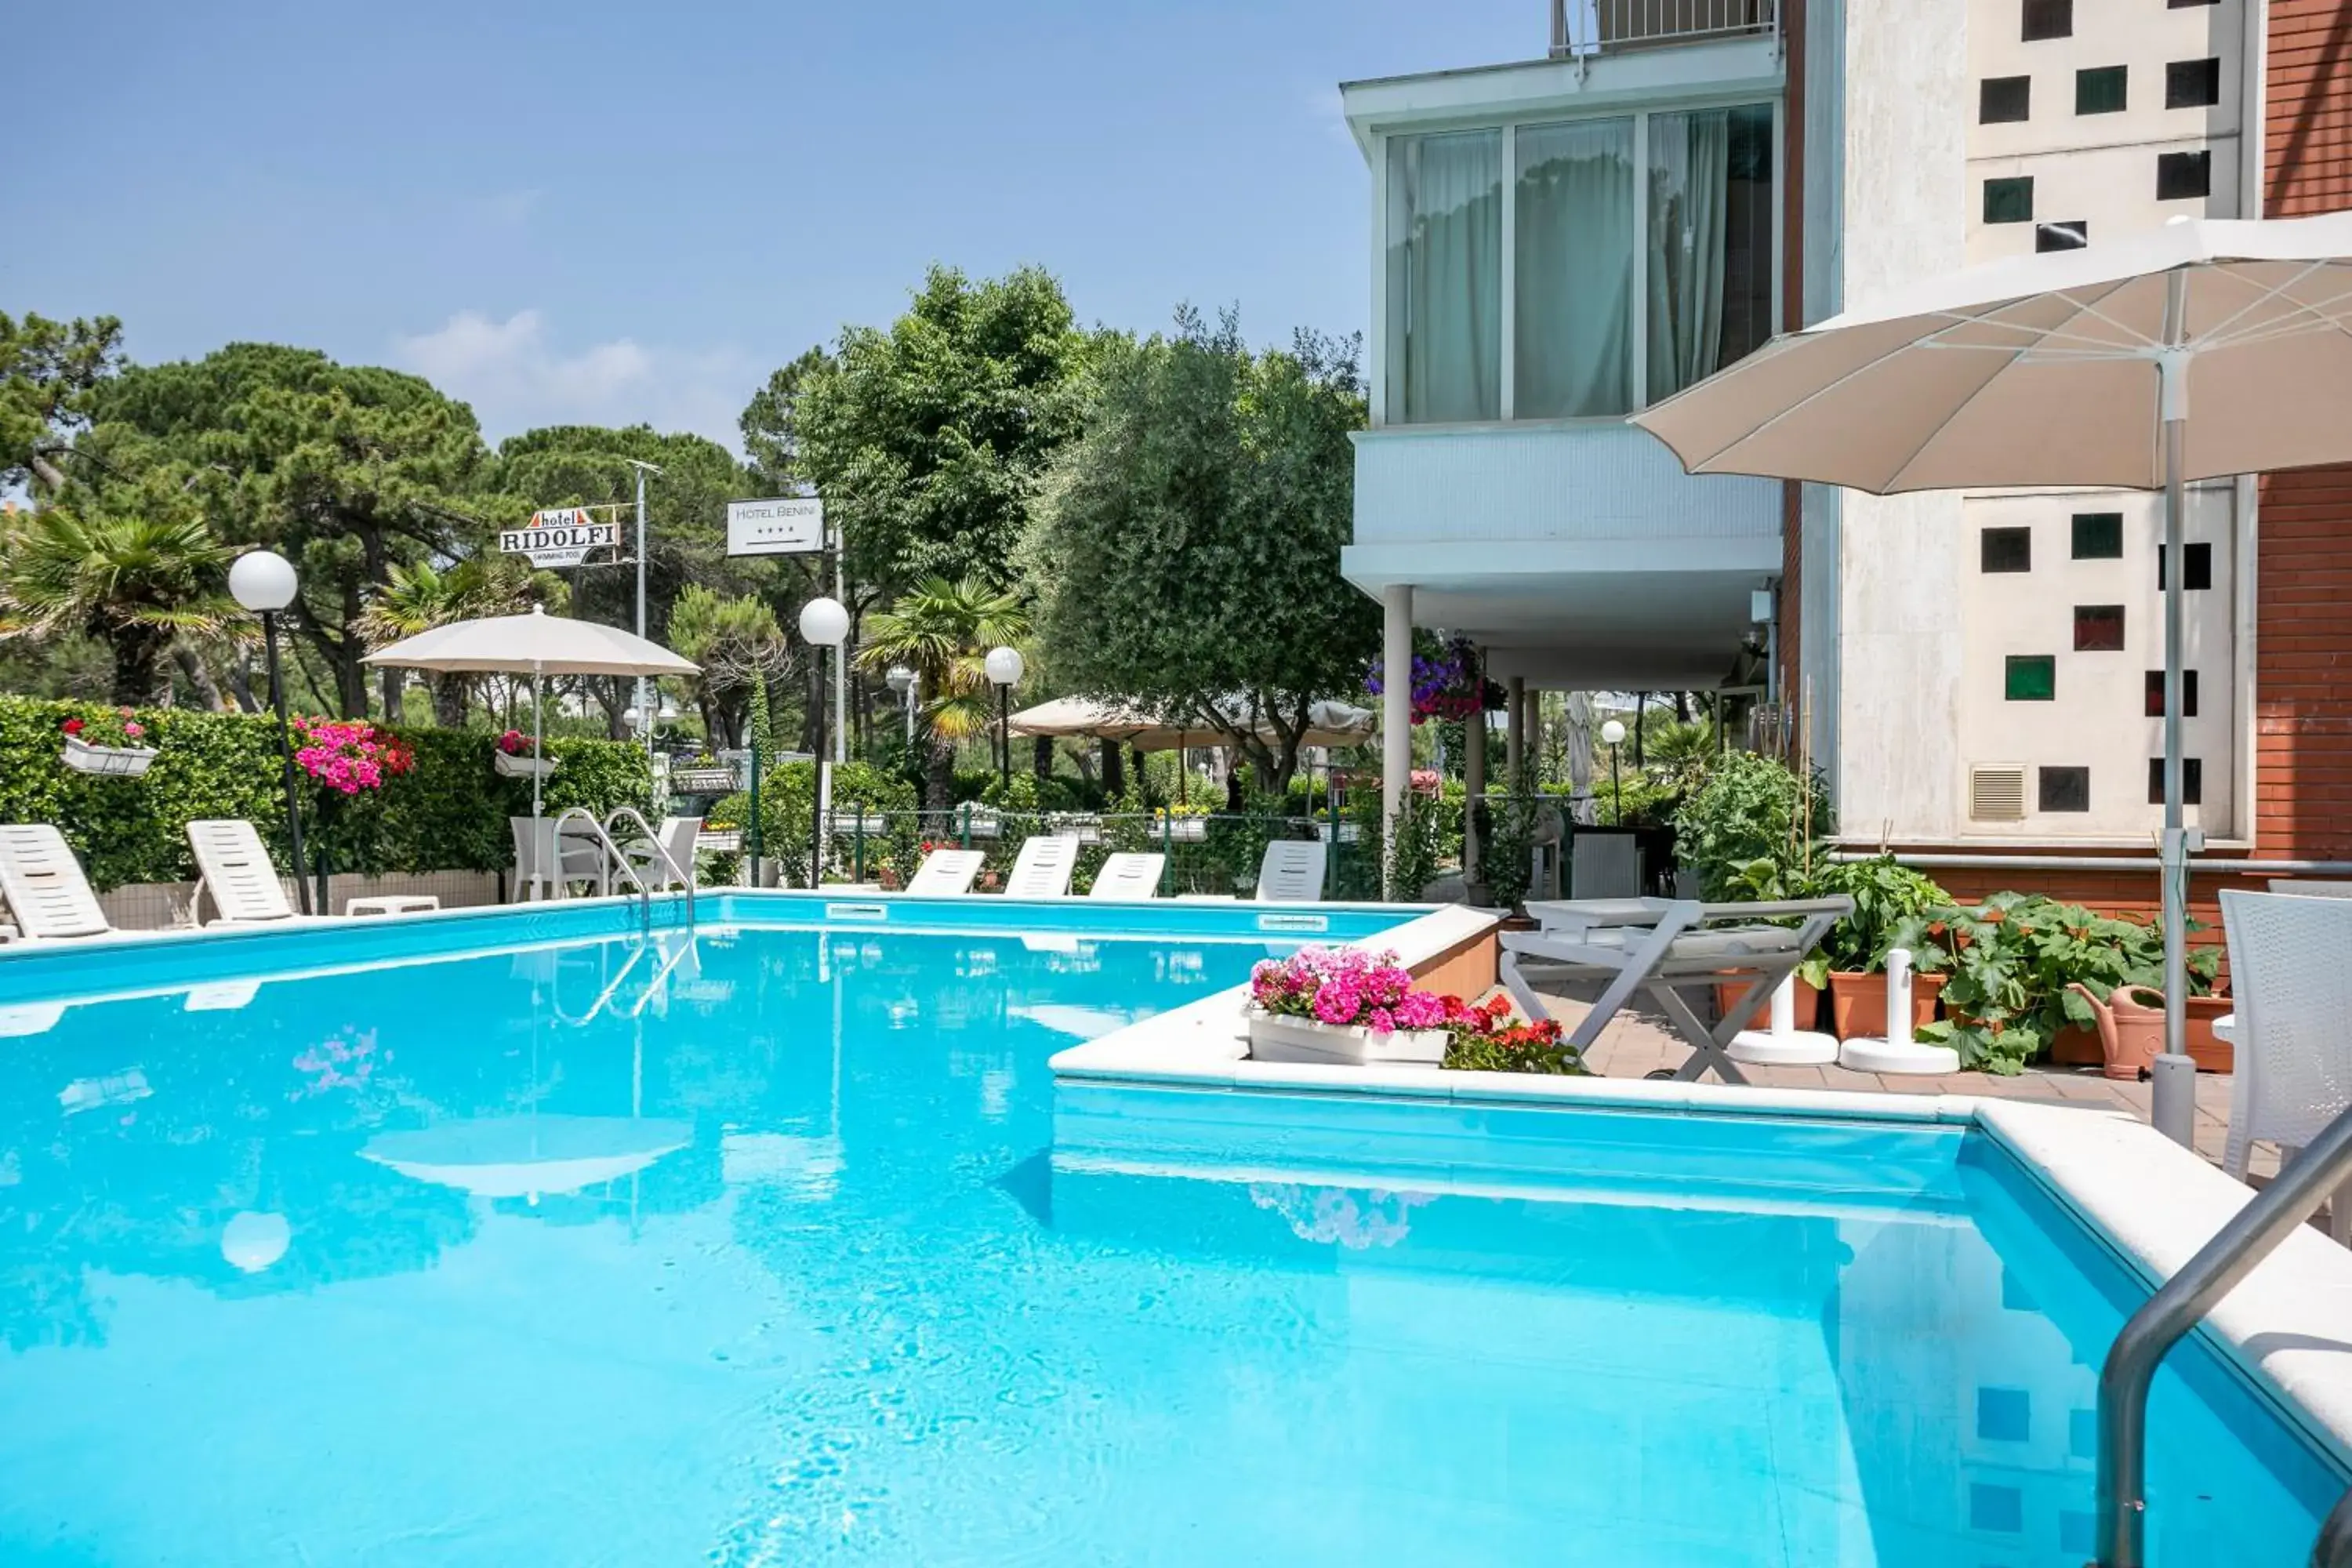 Swimming pool in Hotel Ridolfi